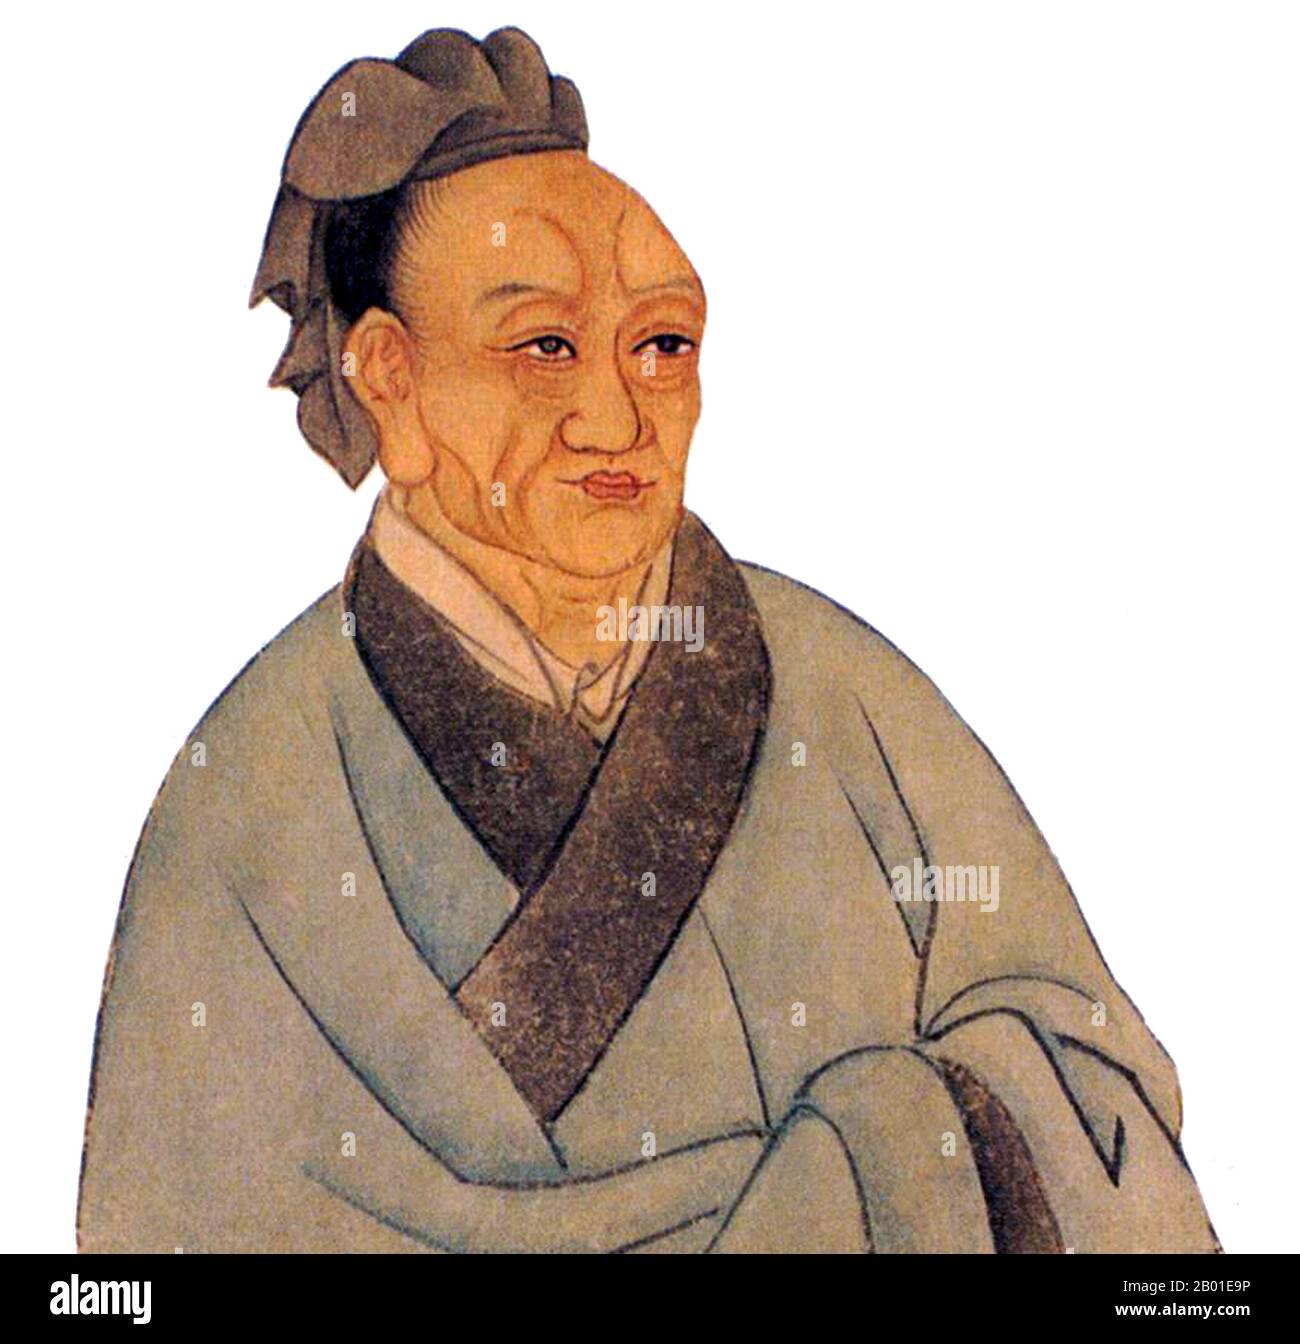 Cina: SIMA Qian (145-86 a.C. circa), padre della storiografia cinese e 'Grand Historian' della Cina, prima dinastia Han (206 a.C. - 220 CE). SIMA Qian (Wade-Giles: SSU-ma CH'ien) è stato un Prefetto dei grandi scribi (太史公) della dinastia Han. È considerato come il padre della storiografia cinese per il suo lavoro altamente lodato, Records of the Grand Historian, una storia generale in stile 'Jizhuanti' della Cina, che copre più di duemila anni dall'imperatore giallo all'imperatore Wu di Han. Il suo lavoro definitivo gettò le basi per la successiva storiografia cinese. Foto Stock